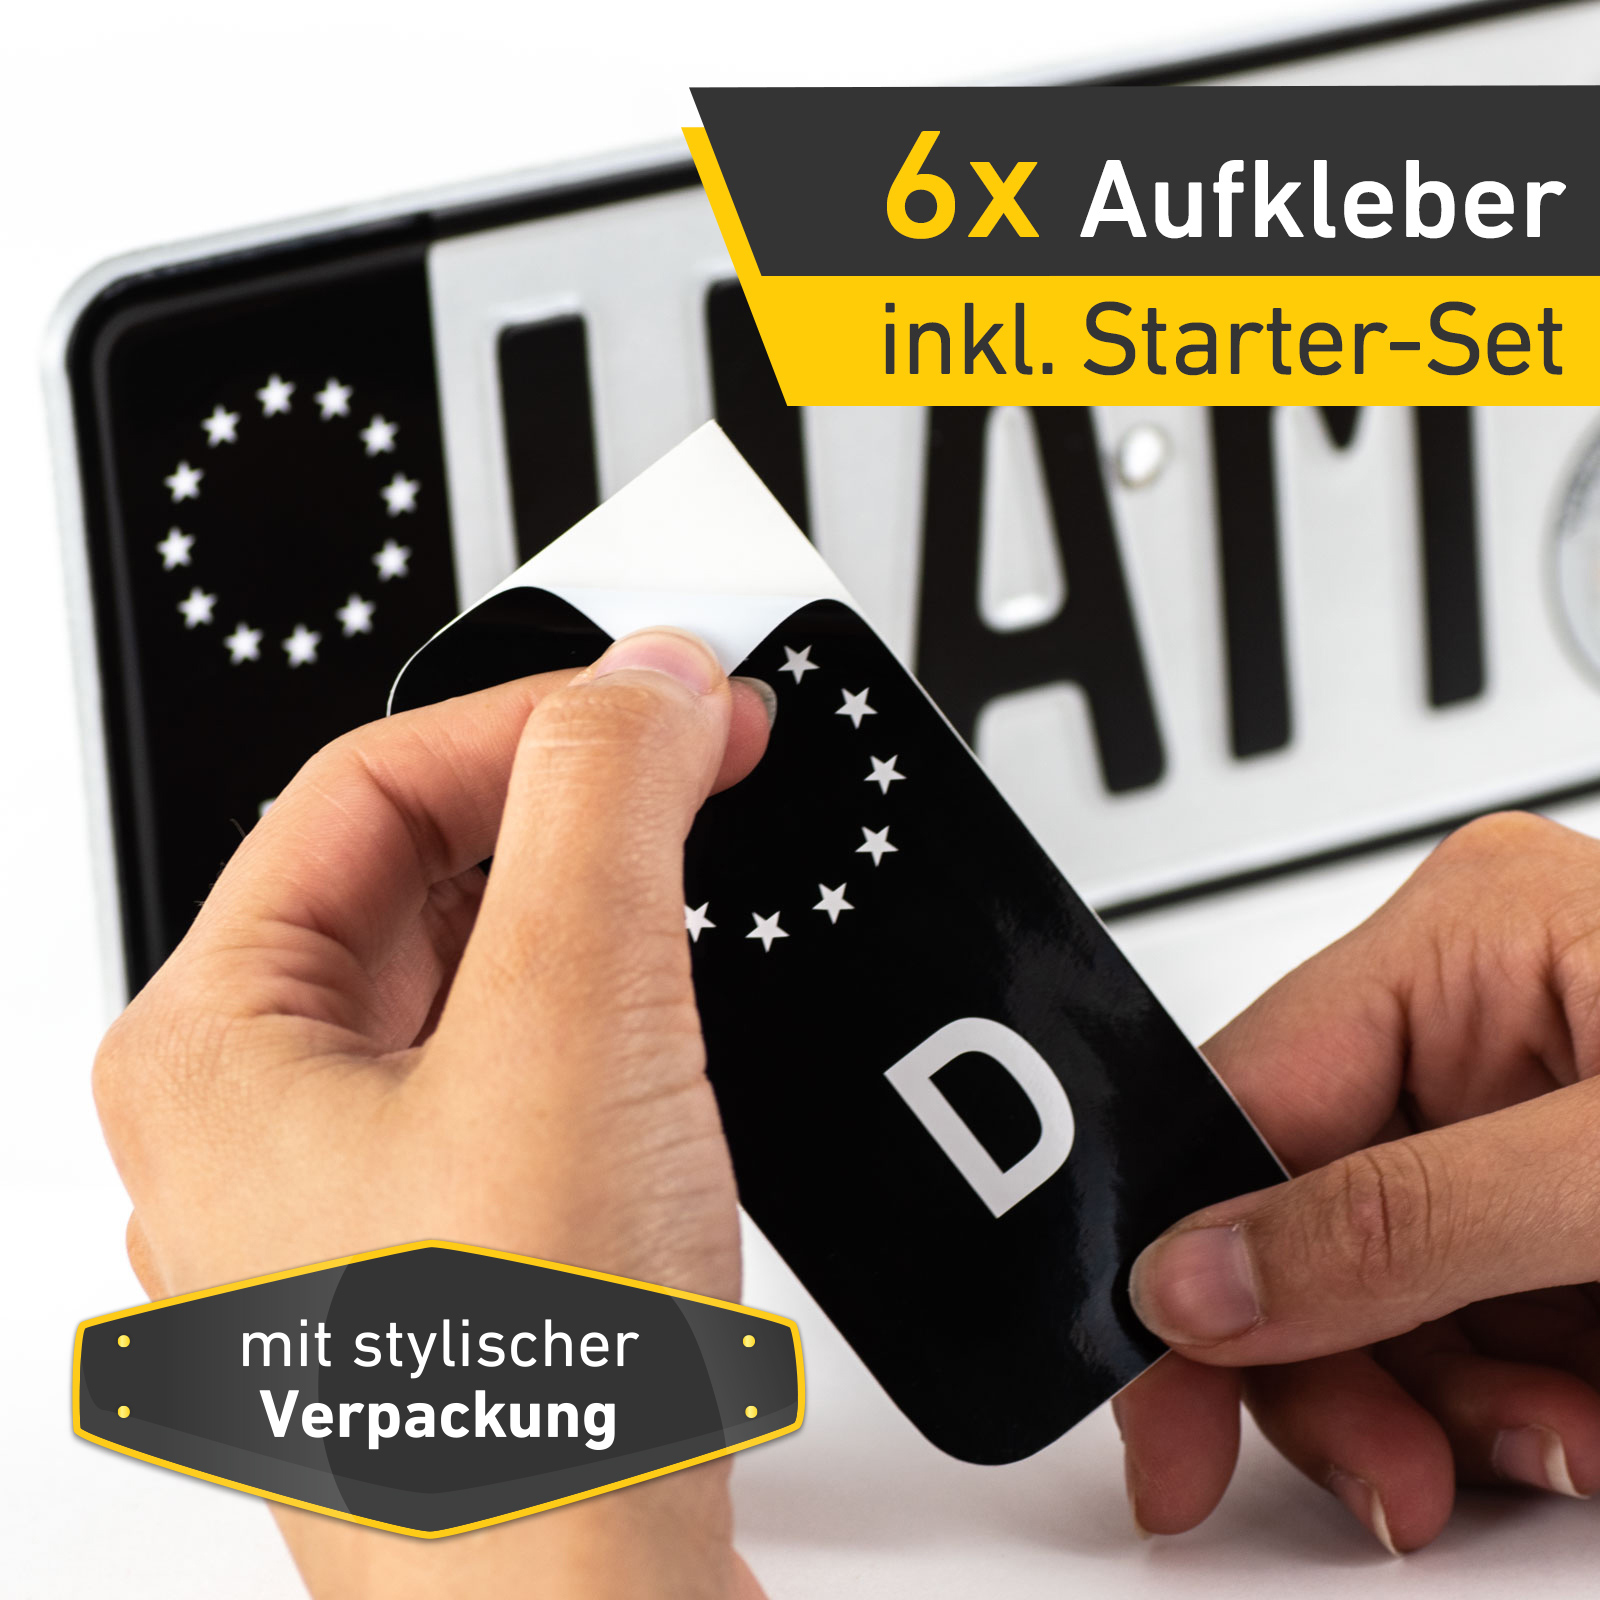 6x Kennzeichen Nummernschild Aufkleber, EU Feld Schwarz, inkl. 3x Starter-Set